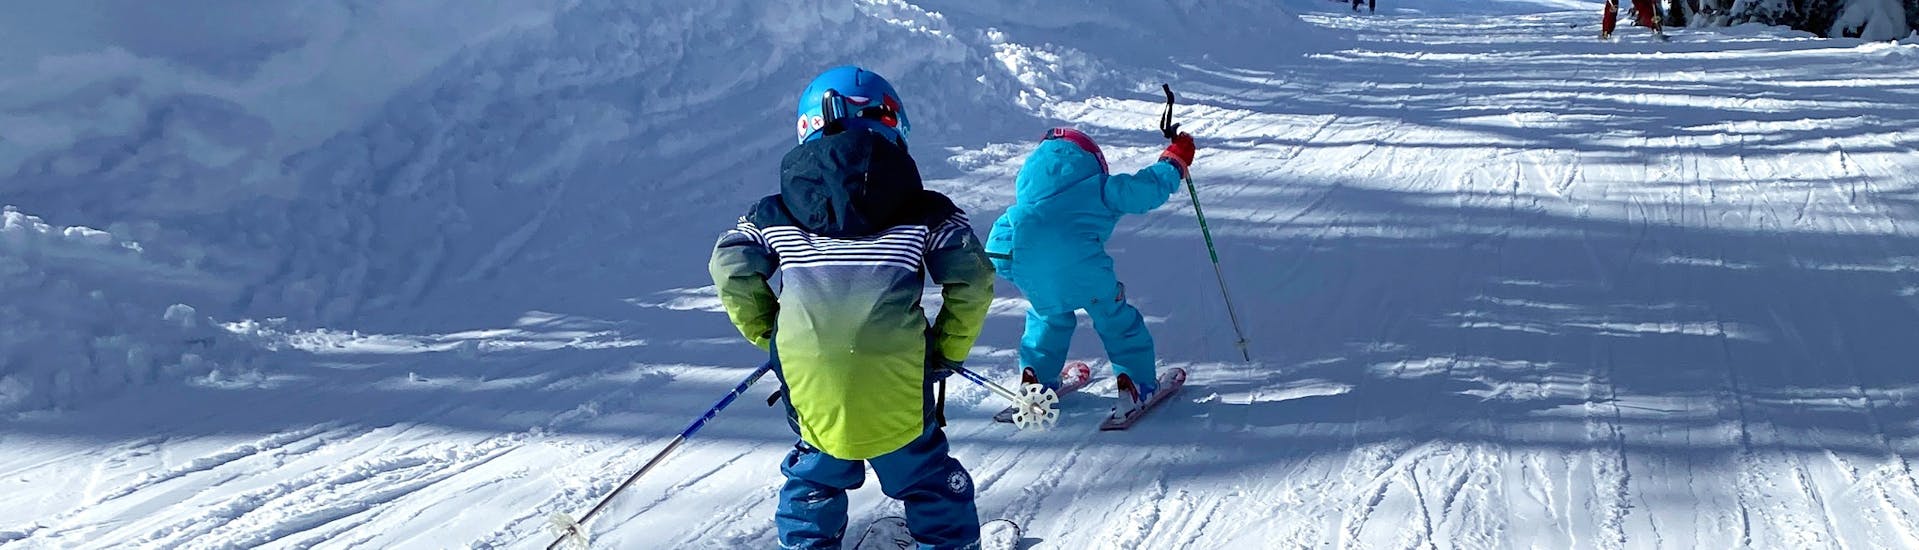 Lezioni private di sci per bambini a partire da 3 anni principianti assoluti.